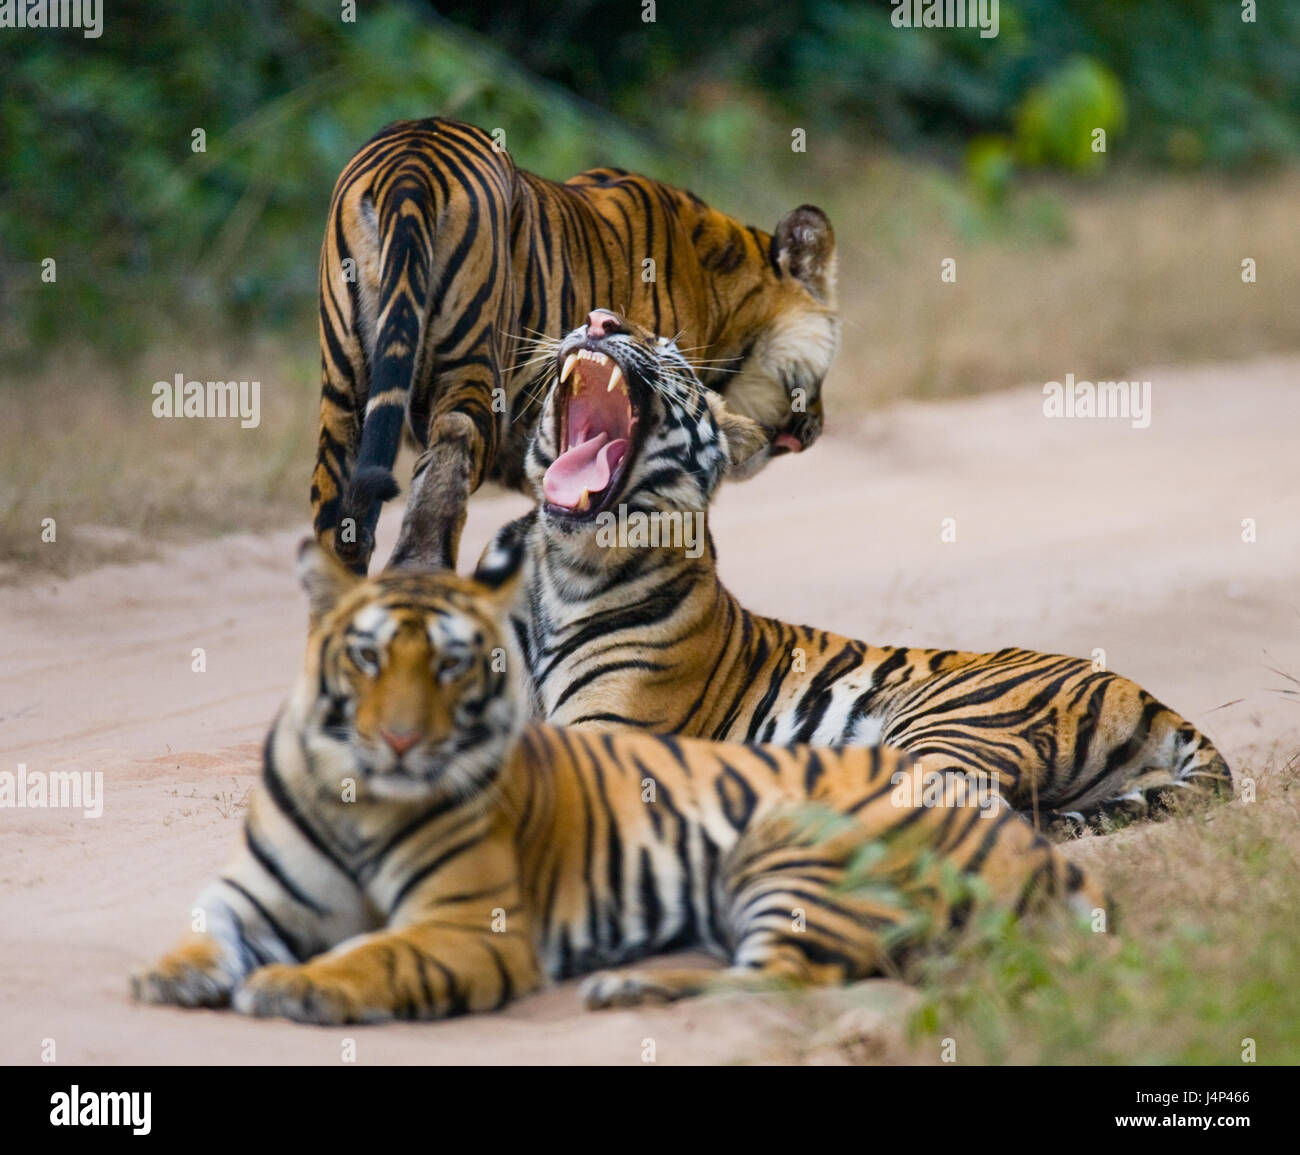 Gruppe wilder Tiger auf der Straße. Indien. Bandhavgarh Nationalpark. Madhya Pradesh. Stockfoto